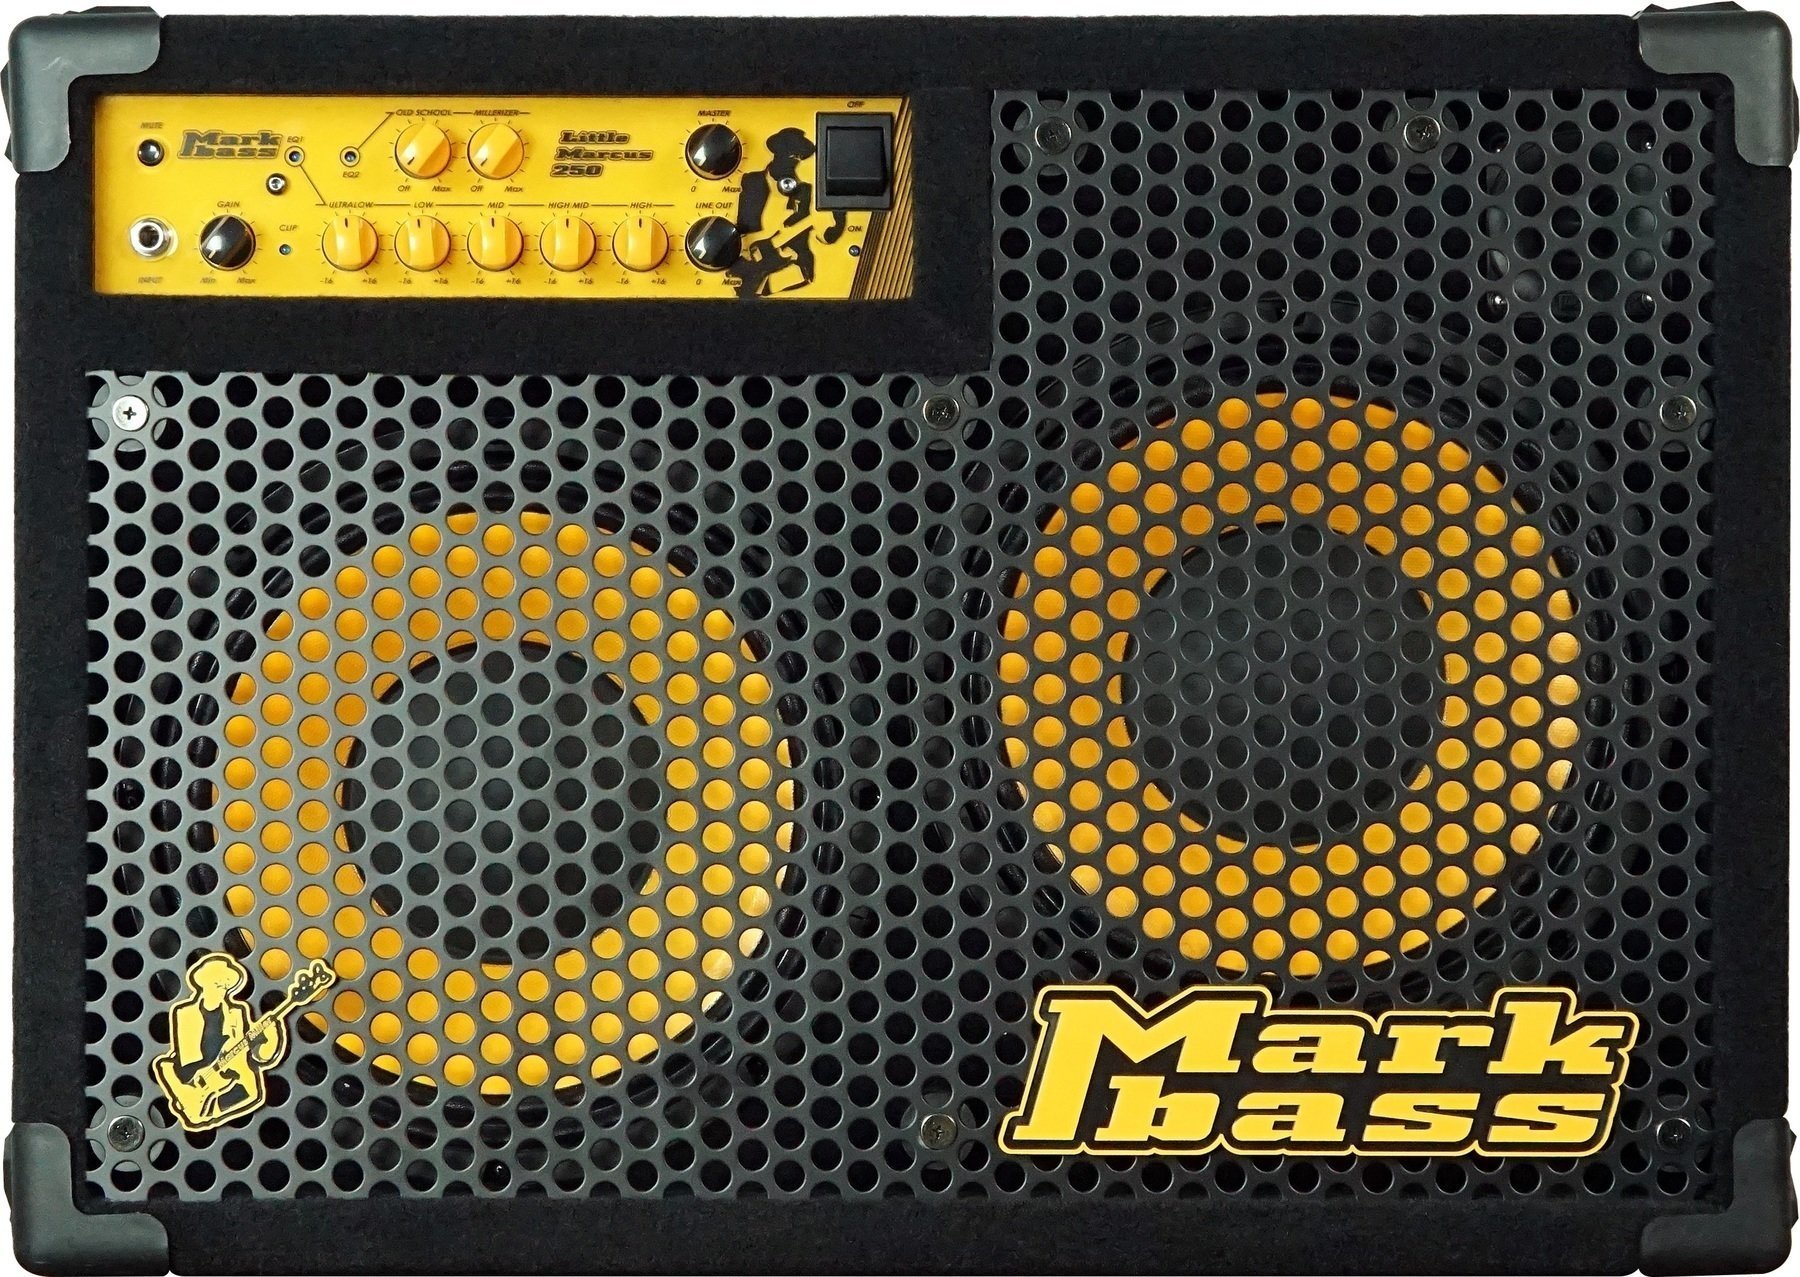 Combo basse Markbass Marcus Miller CMD 102/250